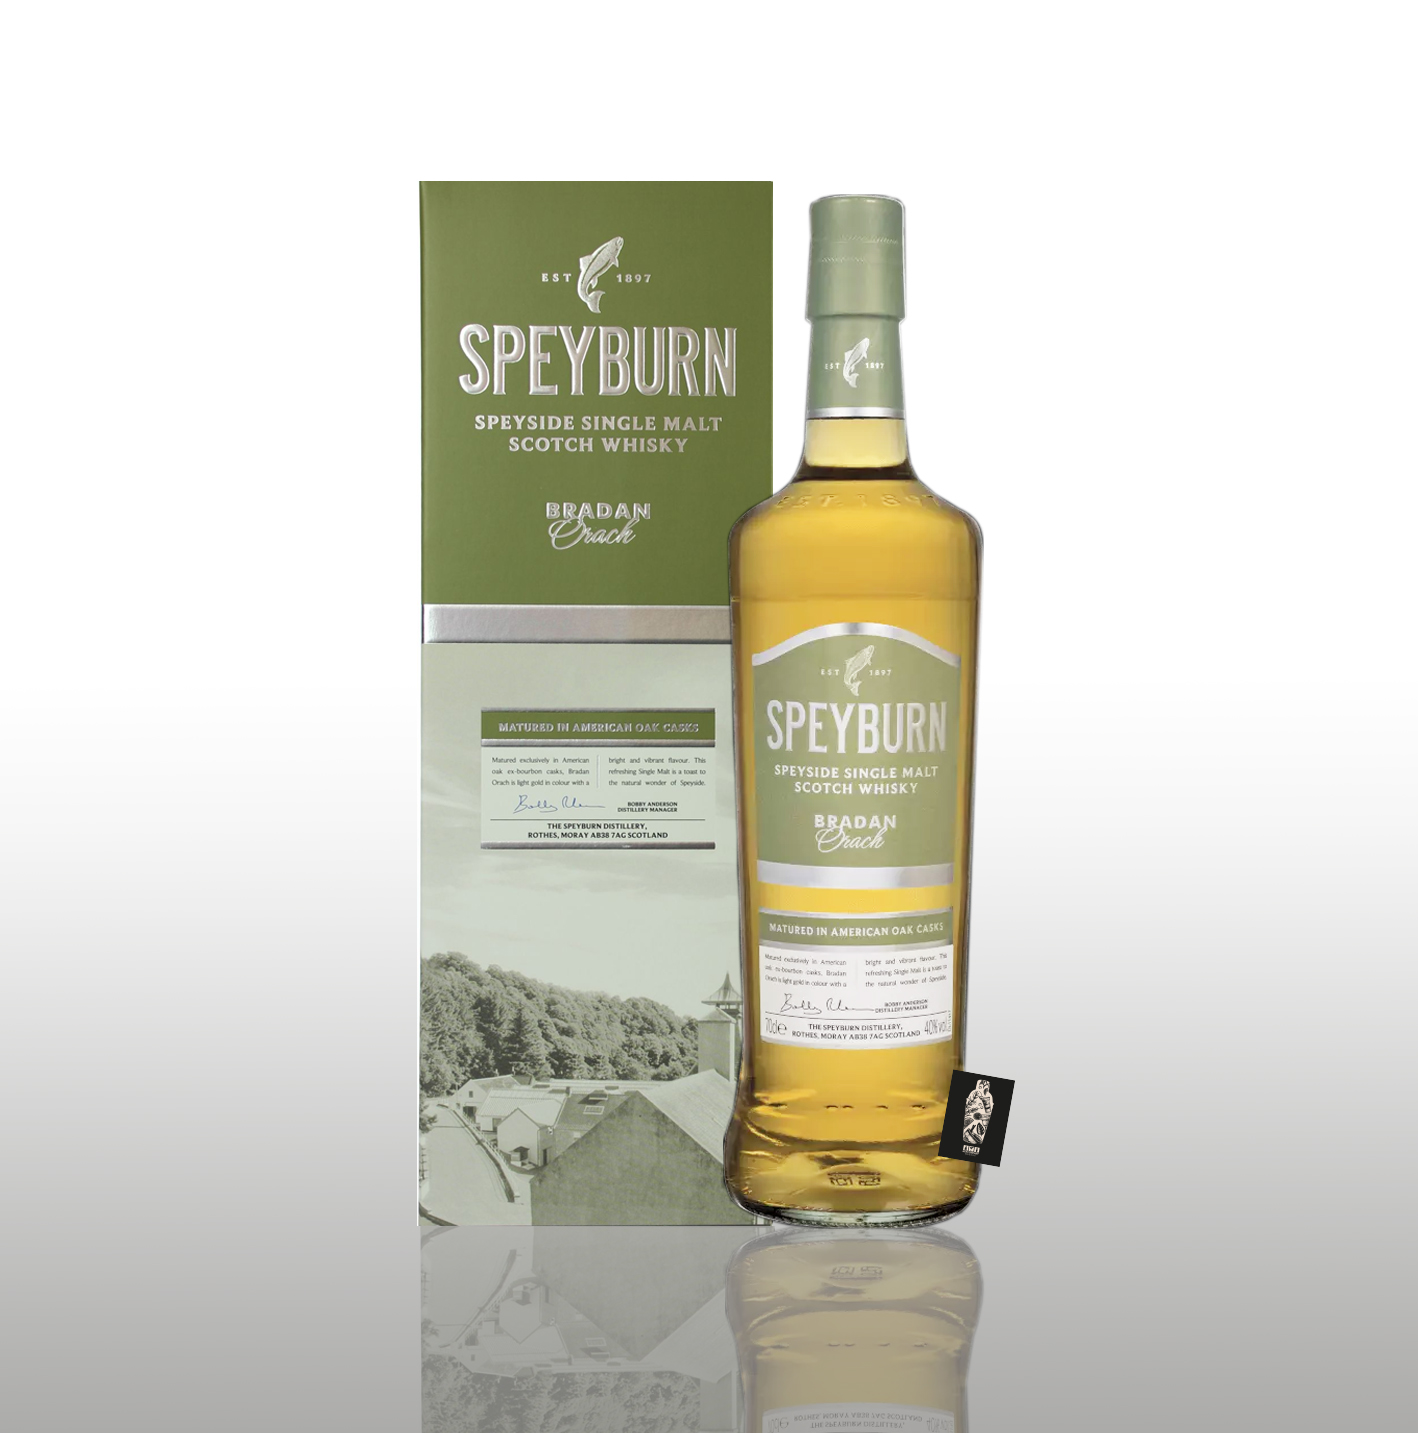 Speyburn BRADAN ORACH Highland Single Malt Scotch Whisky 40% Vol. 0,7l inkl. Geschenkbox (s. Bild) - [Enthält Sulfite]